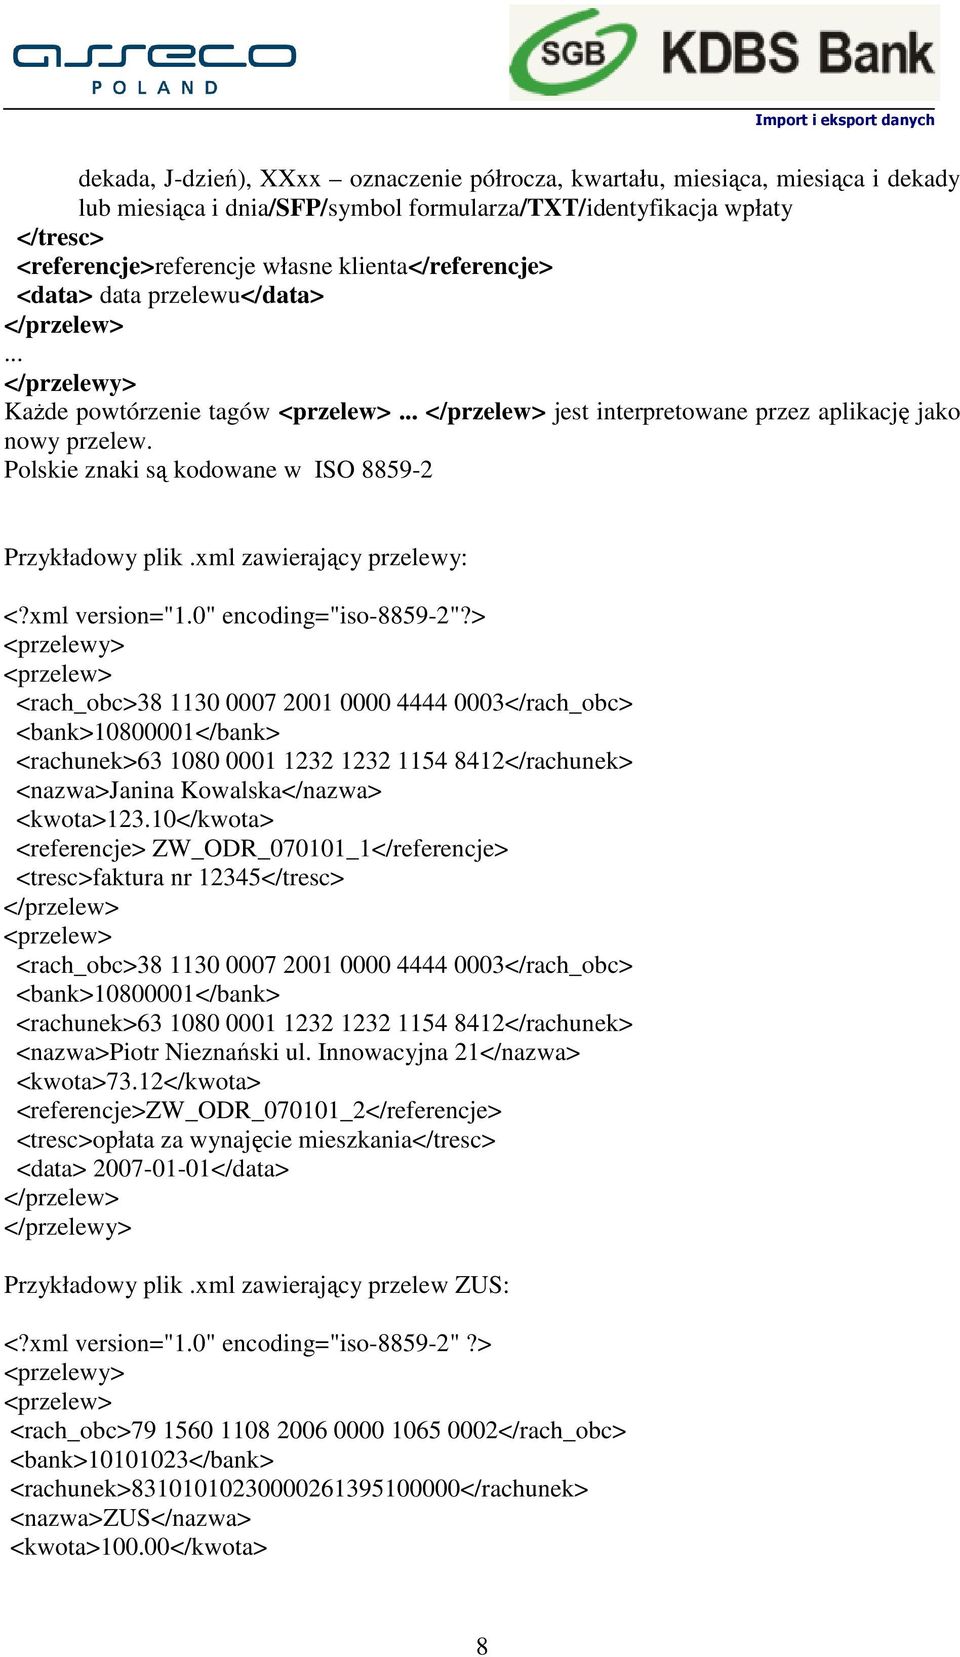 Polskie znaki są kodowane w ISO 8859-2 Przykładowy plik.xml zawierający przelewy: <?xml version="1.0" encoding="iso-8859-2"?